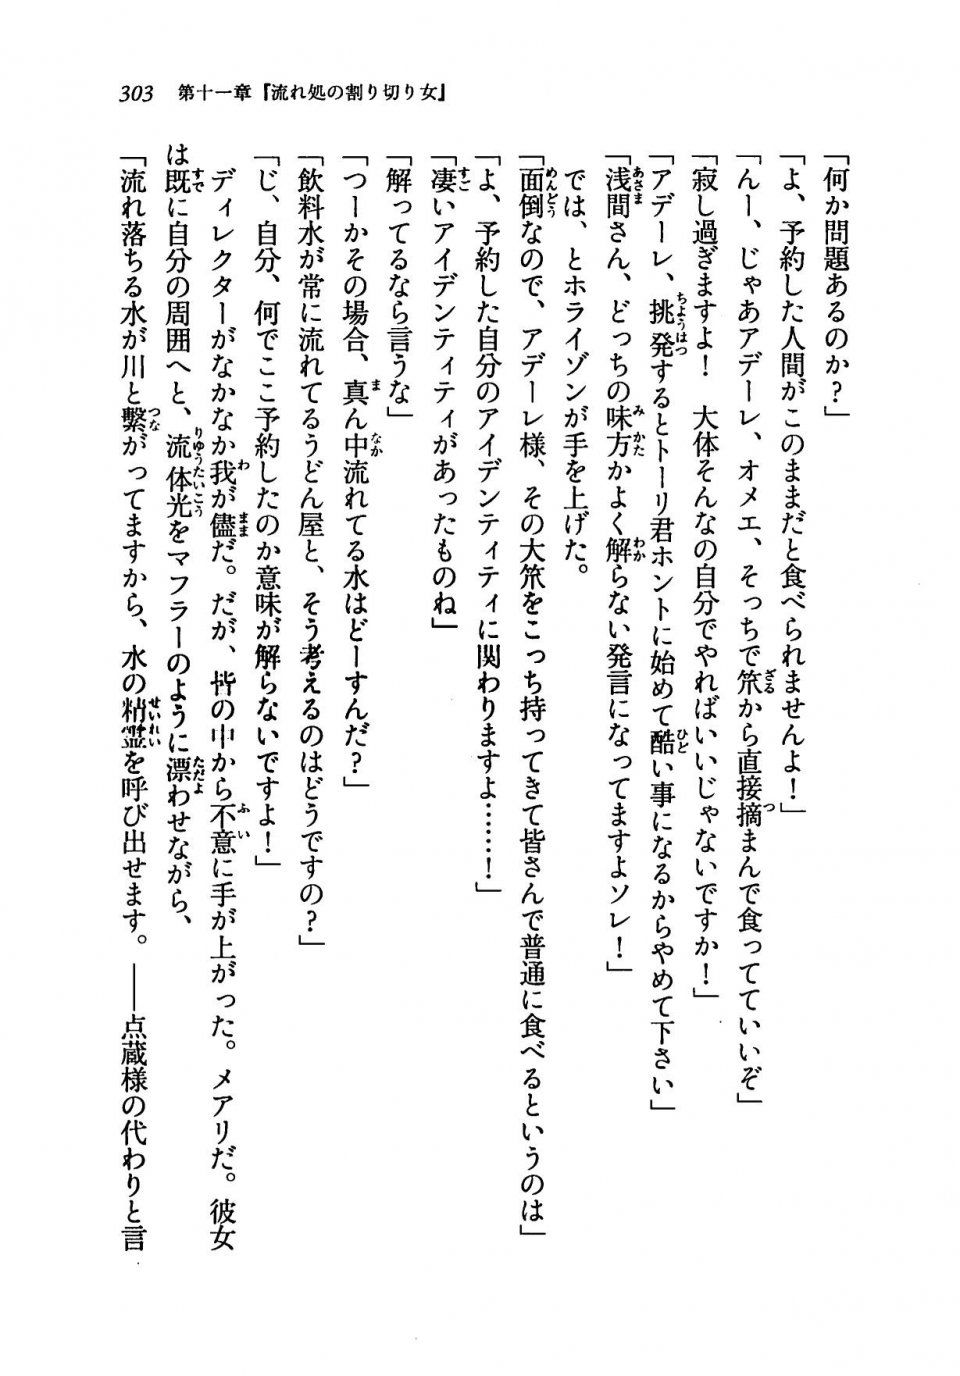 Kyoukai Senjou no Horizon LN Vol 19(8A) - Photo #303